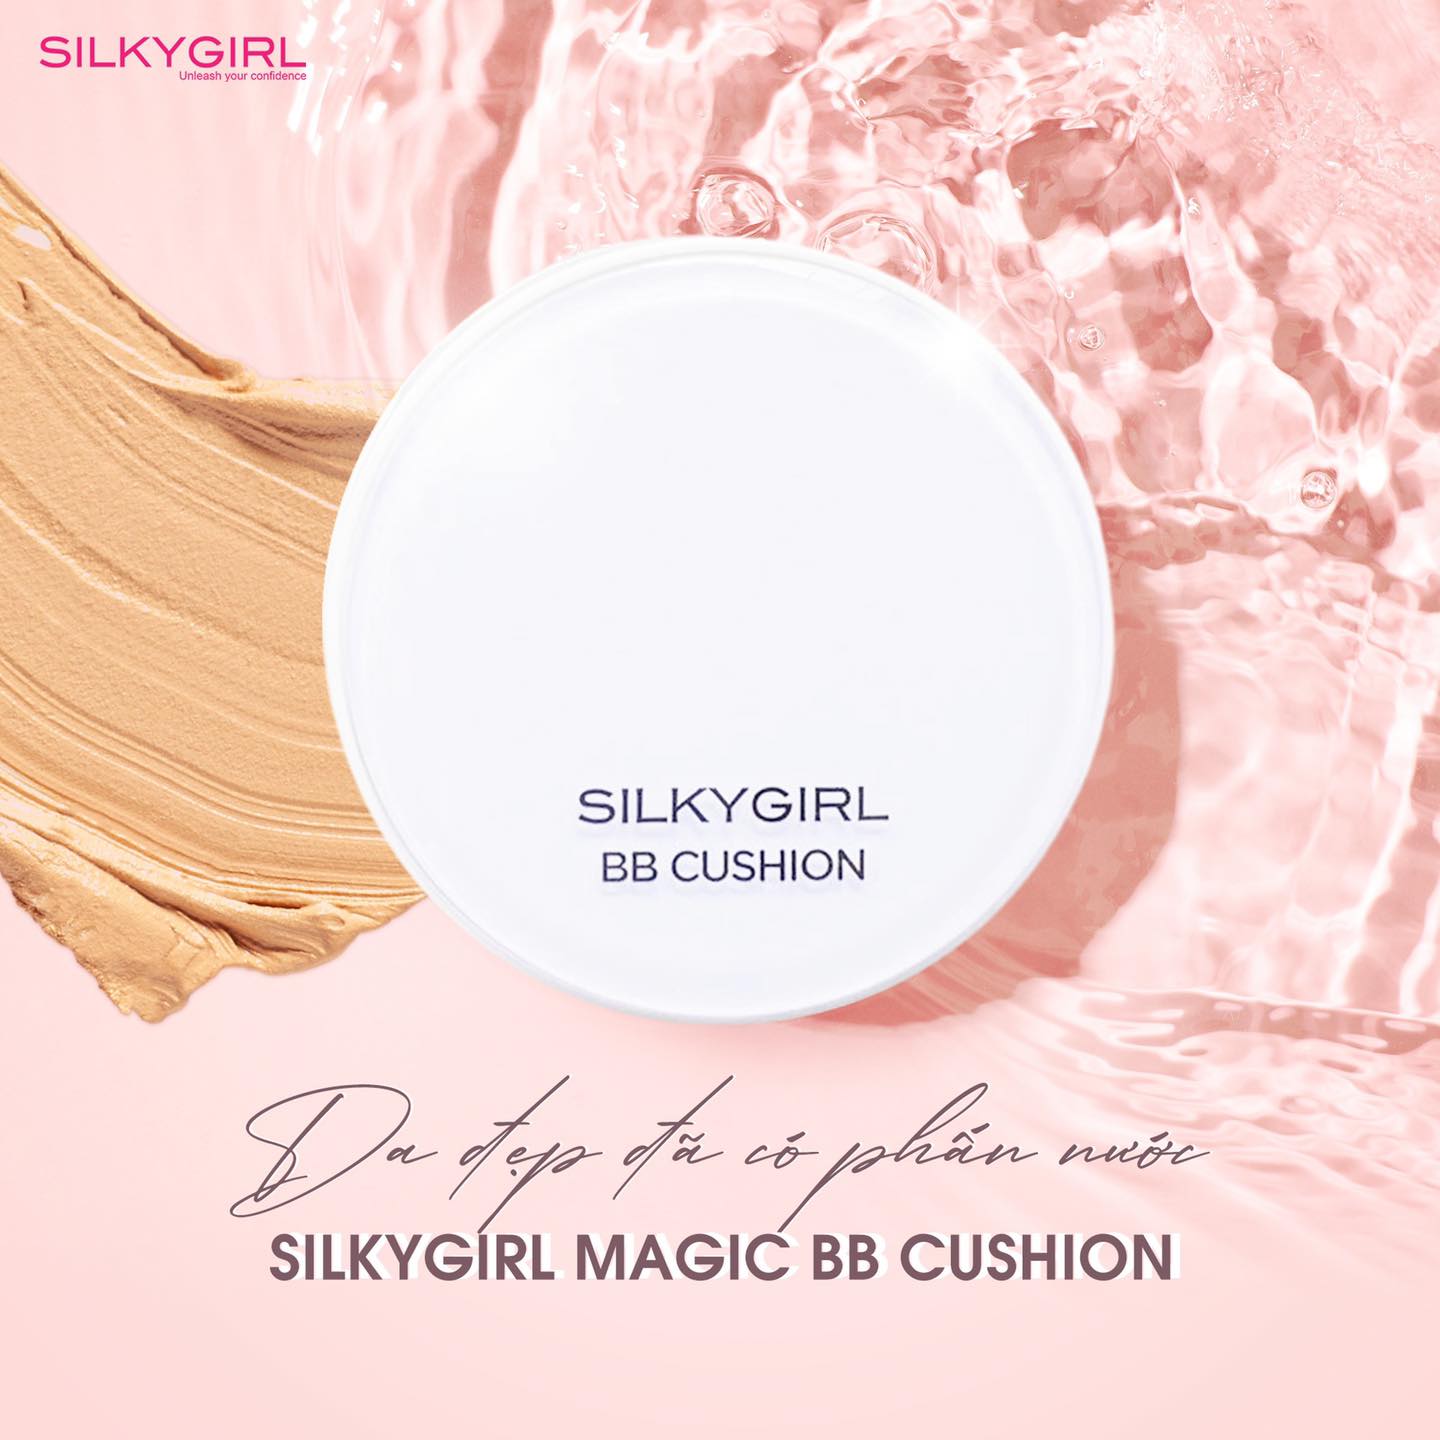 Đây là một trong những sản phẩm của thương hiệu Silkygirl thành công trong thị trường Malaysia